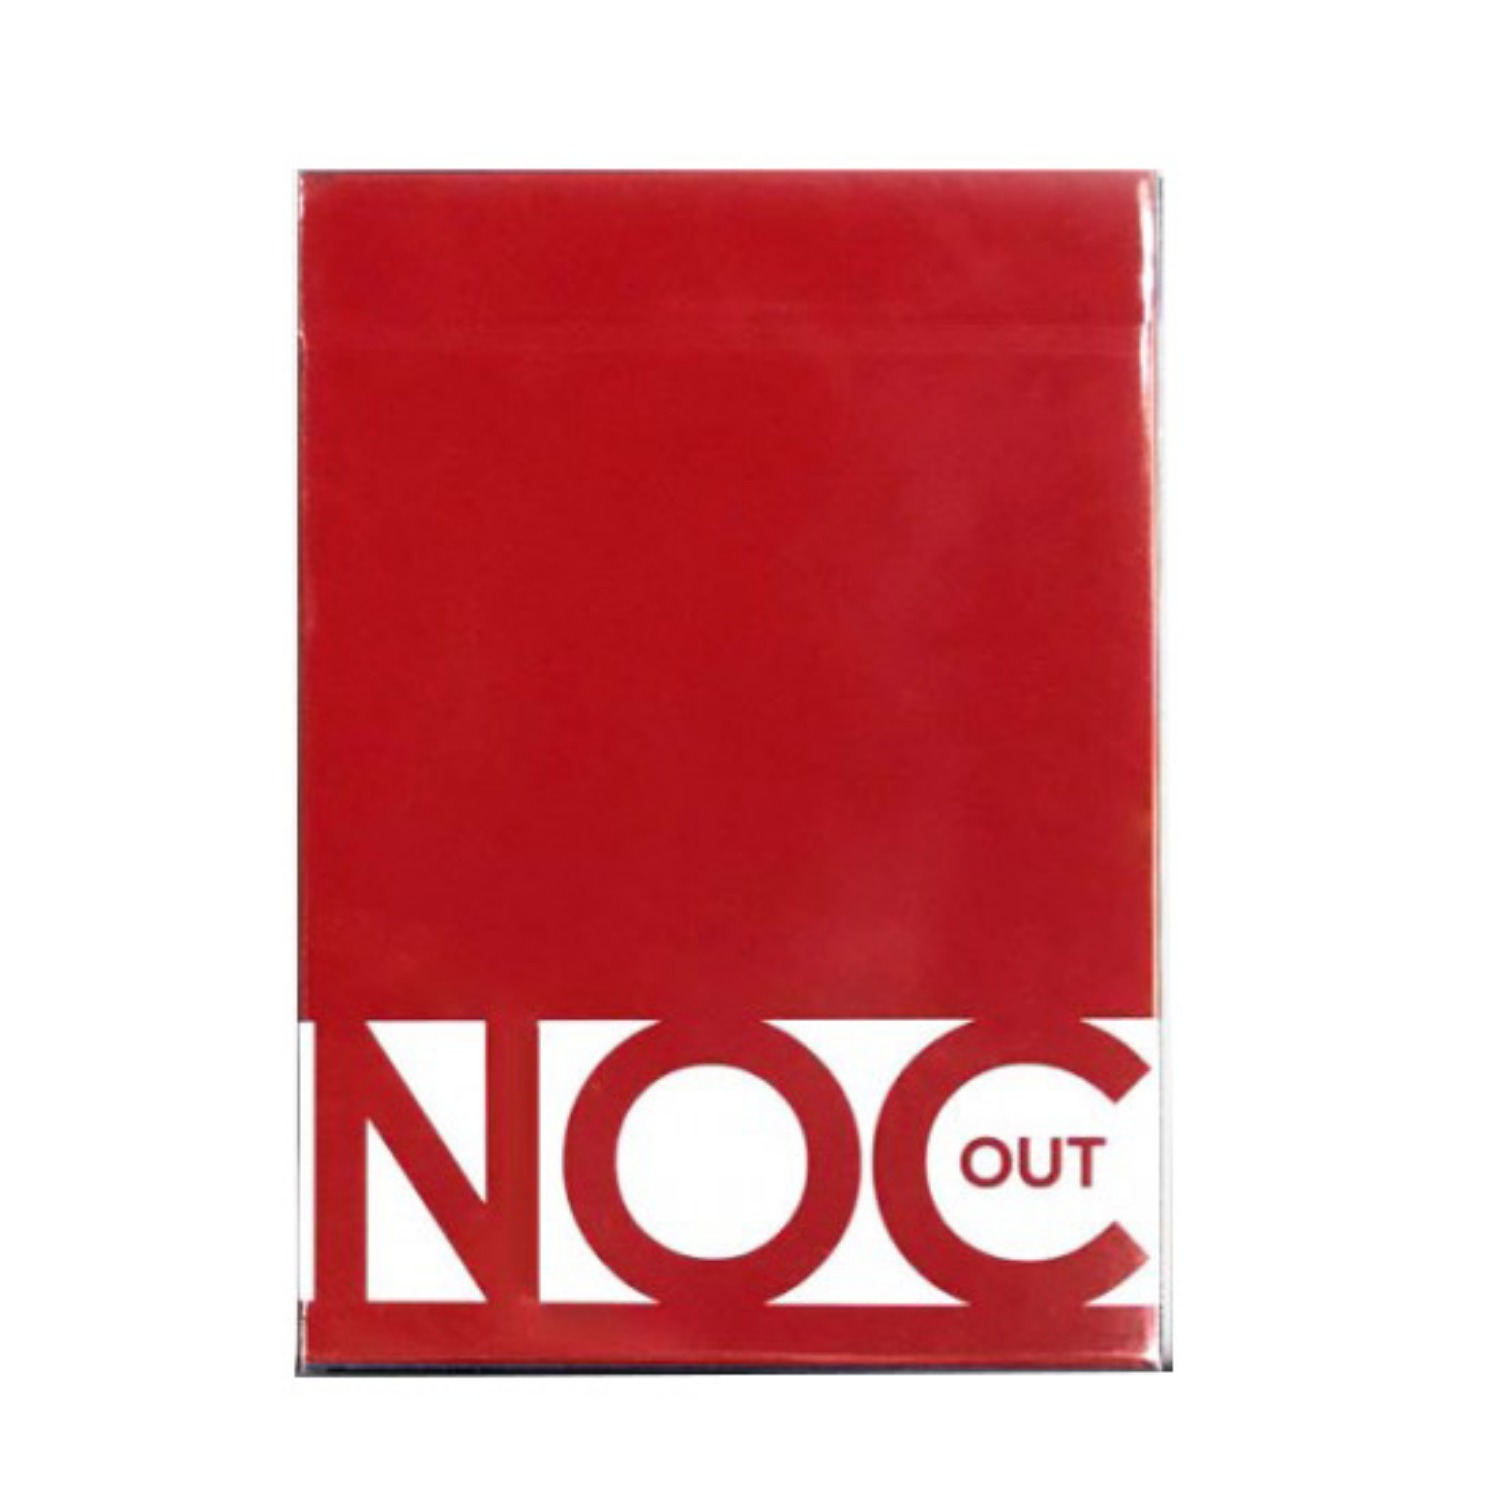 [녹아웃 레드&amp;골드] NOC Out: RED/GOLD Playing Cards